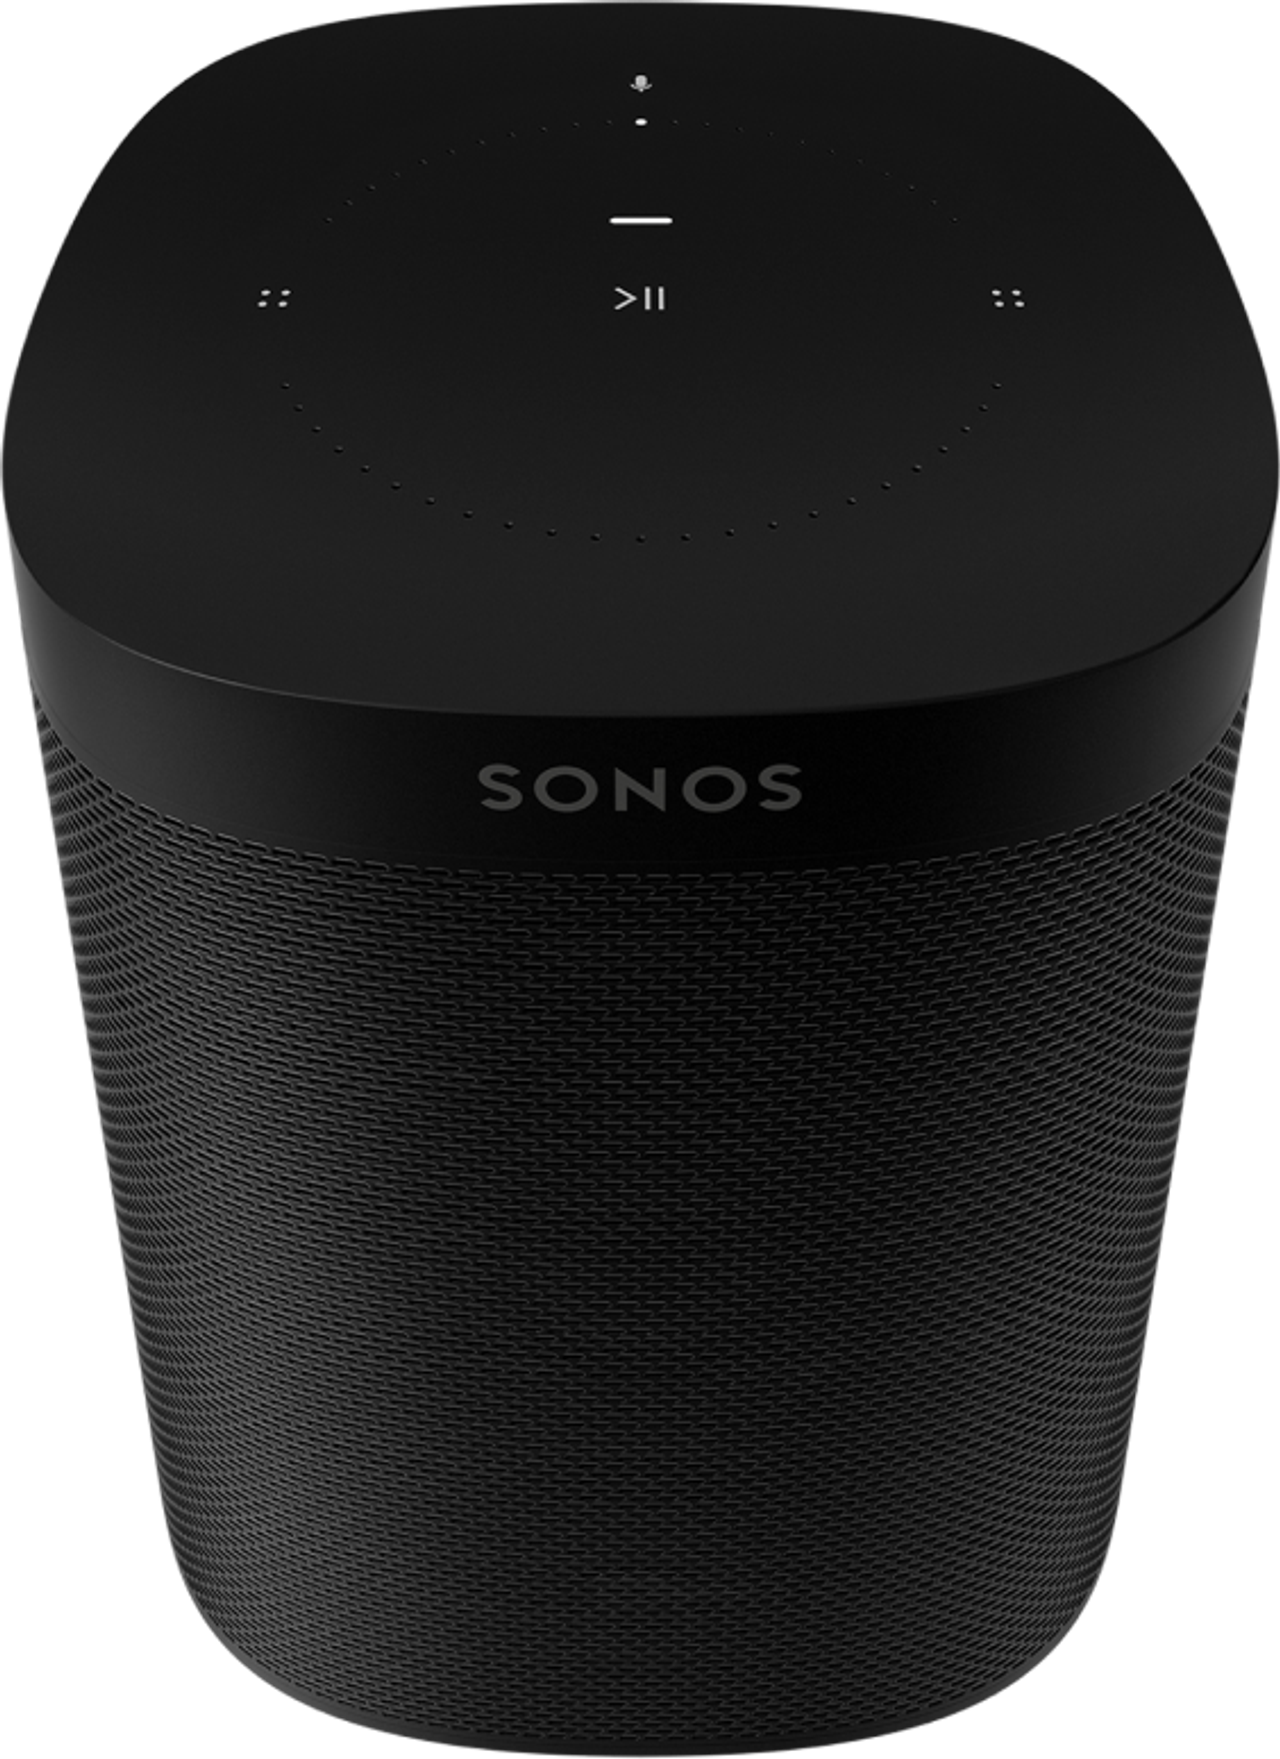 ikke Kan ignoreres er der One Help and Support | Sonos